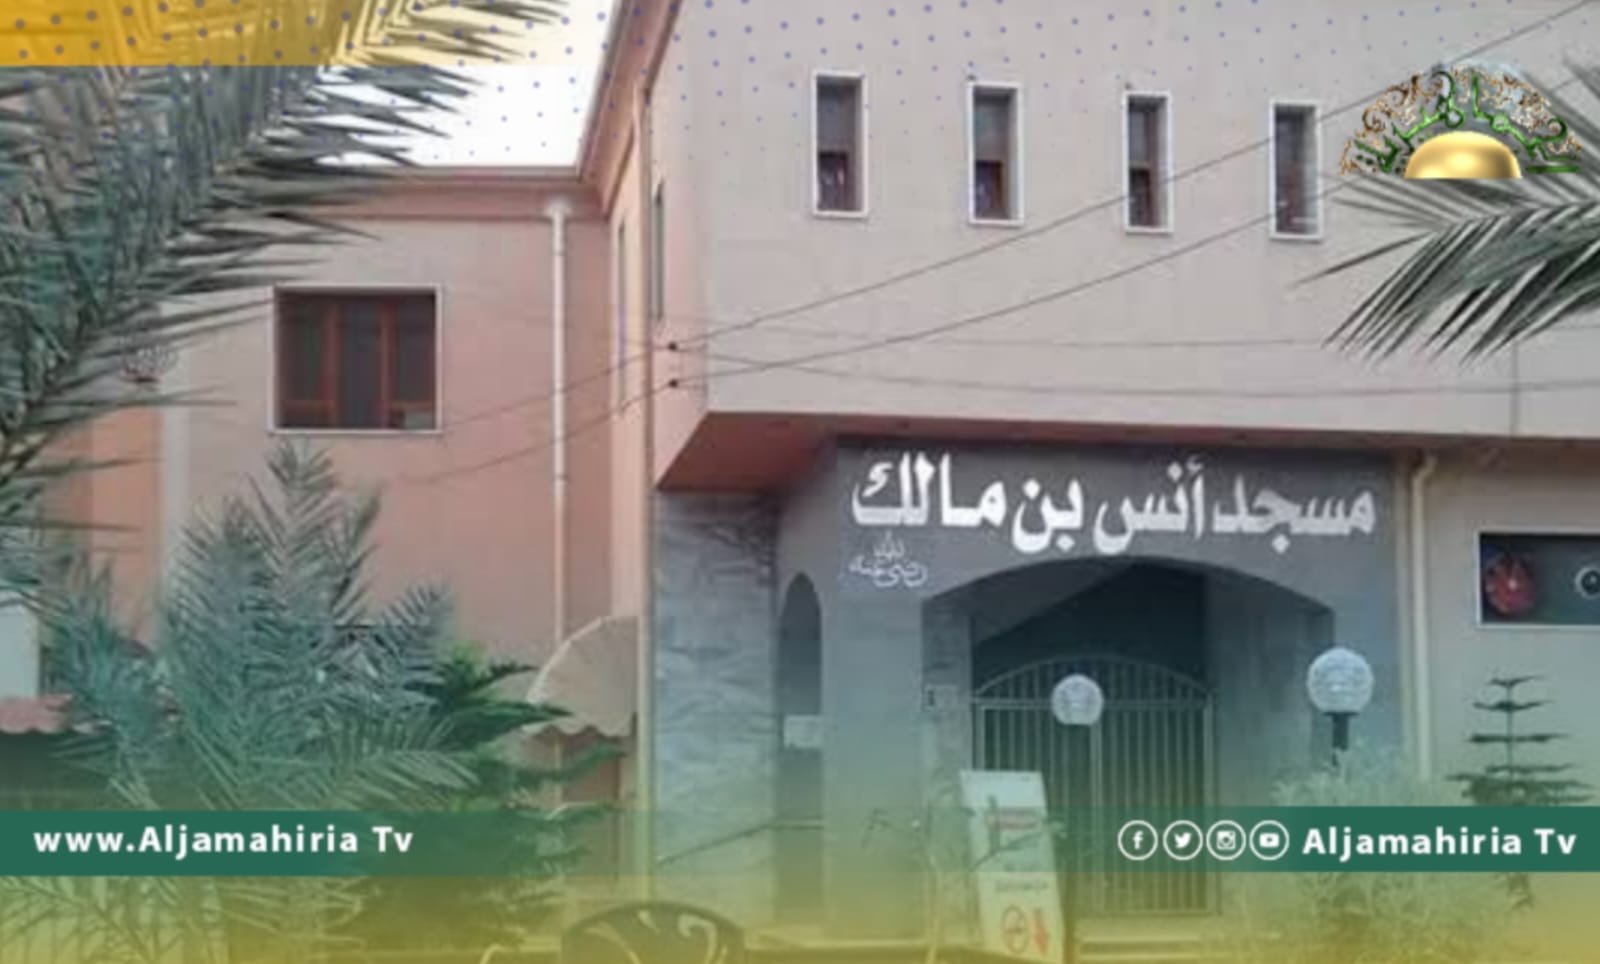 مصادر: إغلاق عدد من المساجد في زناتة والحشان وسوق الجمعة بطرابلس لانتشار حشرة البق